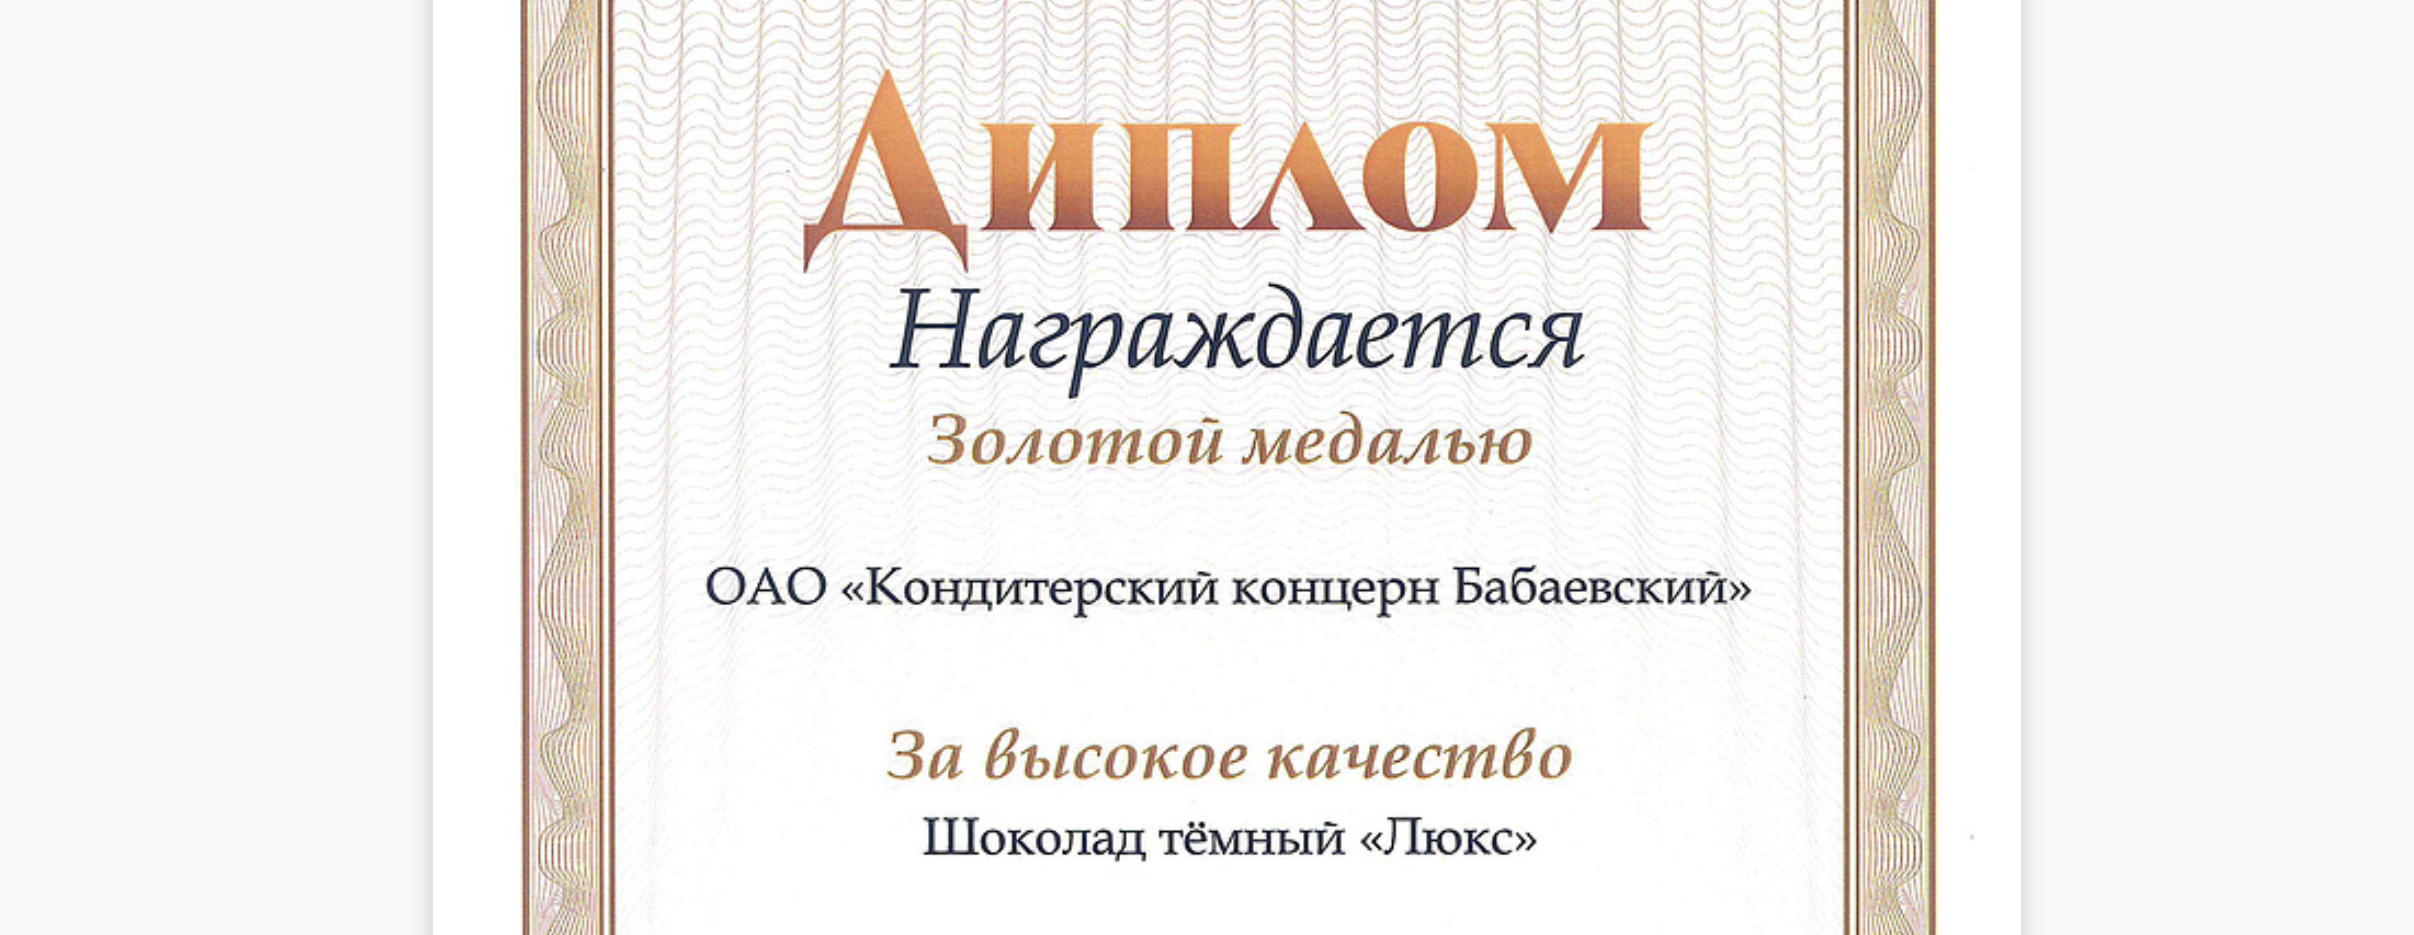 Шоколад «Бабаевский Люкс» получил золотую медаль за качество